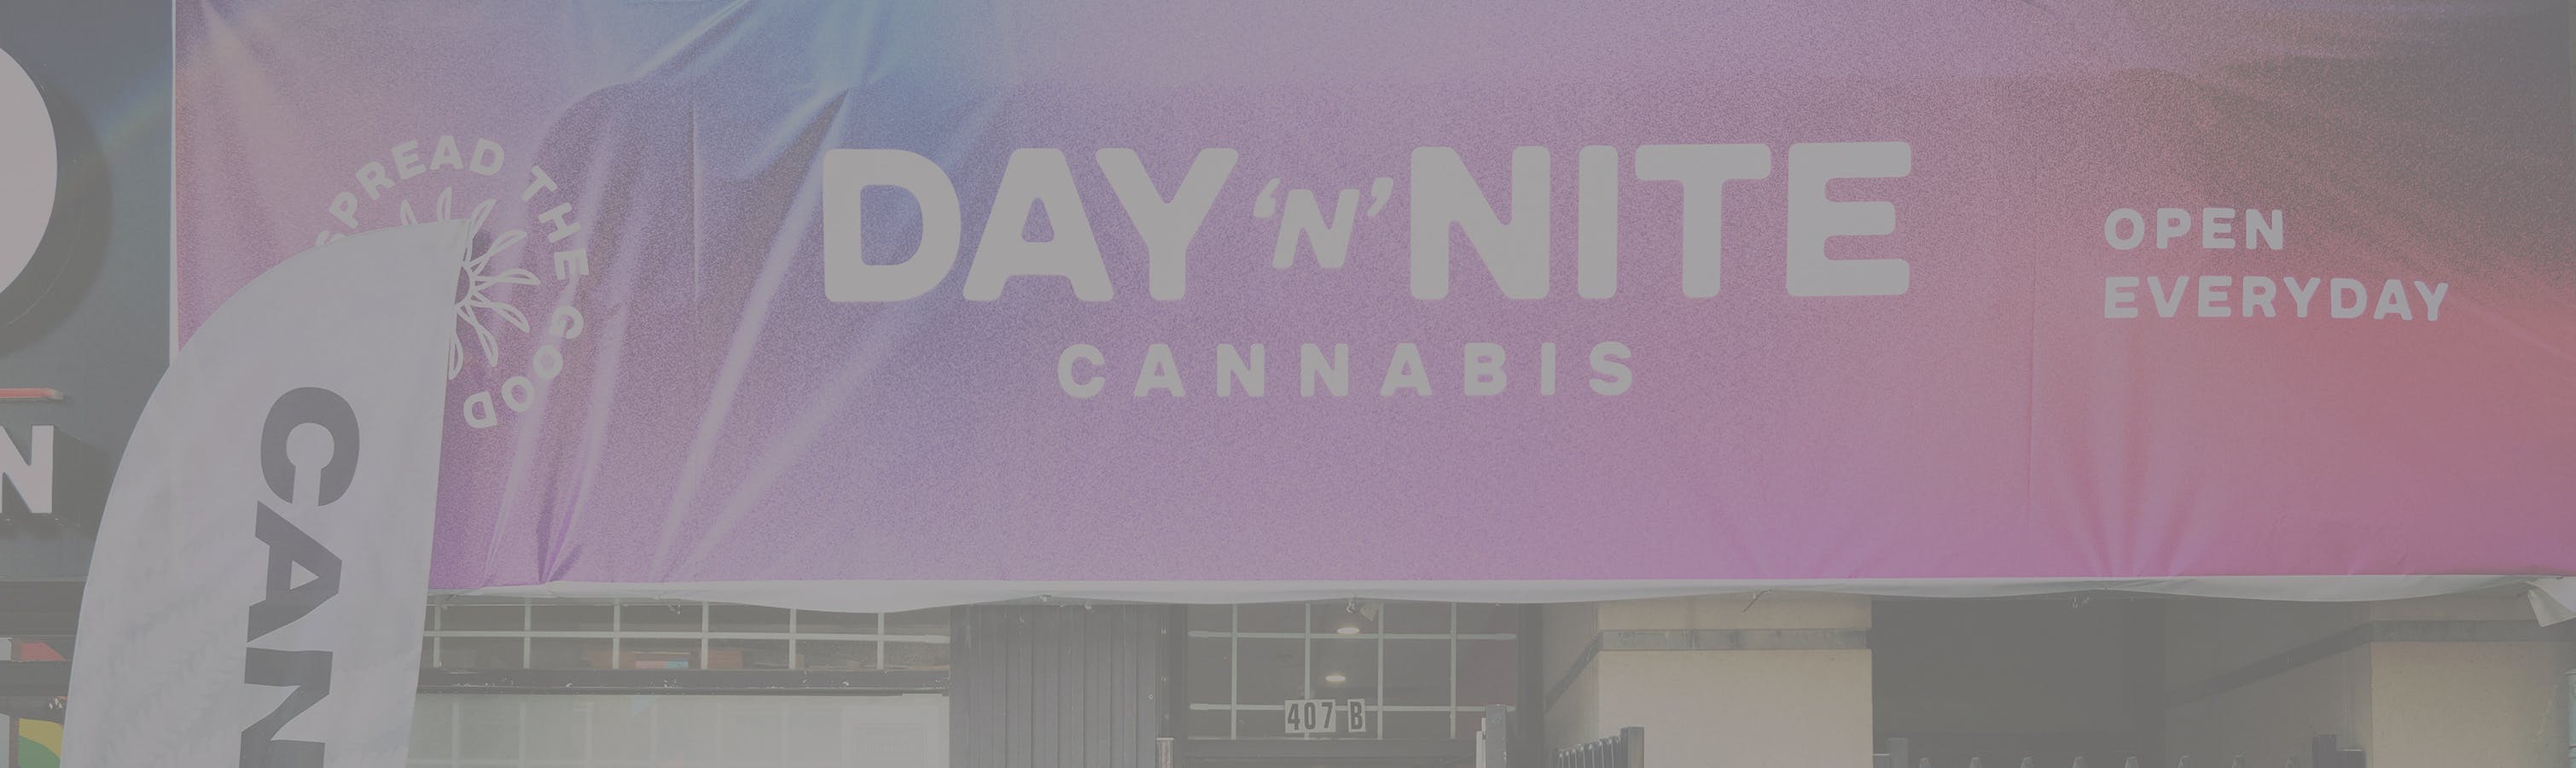 Cannabis Store Day 'N' Nite Cannabis - 0